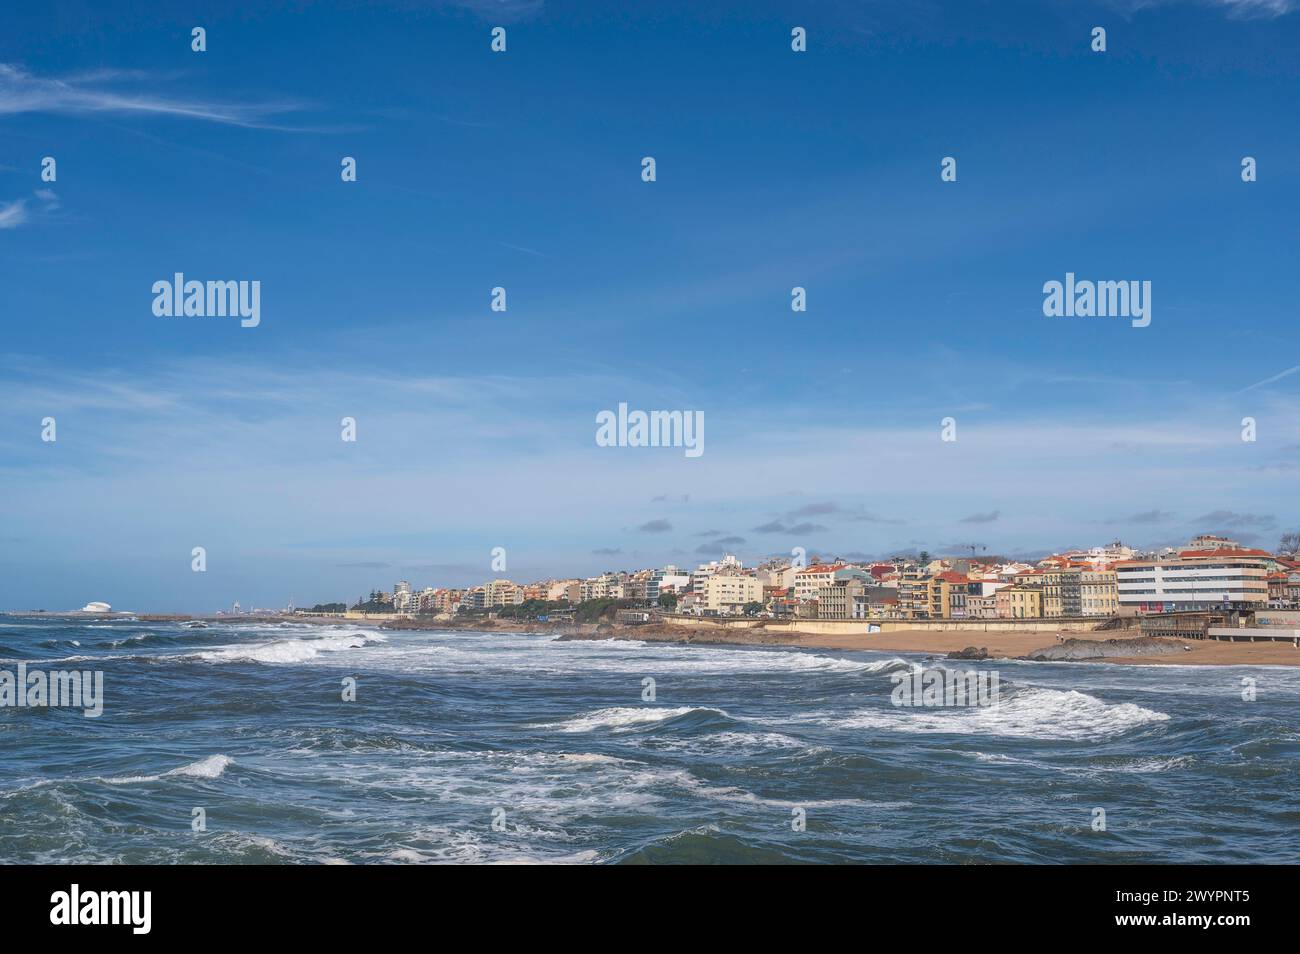 Vista sulla spiaggia della costa atlantica, verso la città di Foz do Douro, vicino a Porto, in Portogallo, in una giornata luminosa e soleggiata Foto Stock